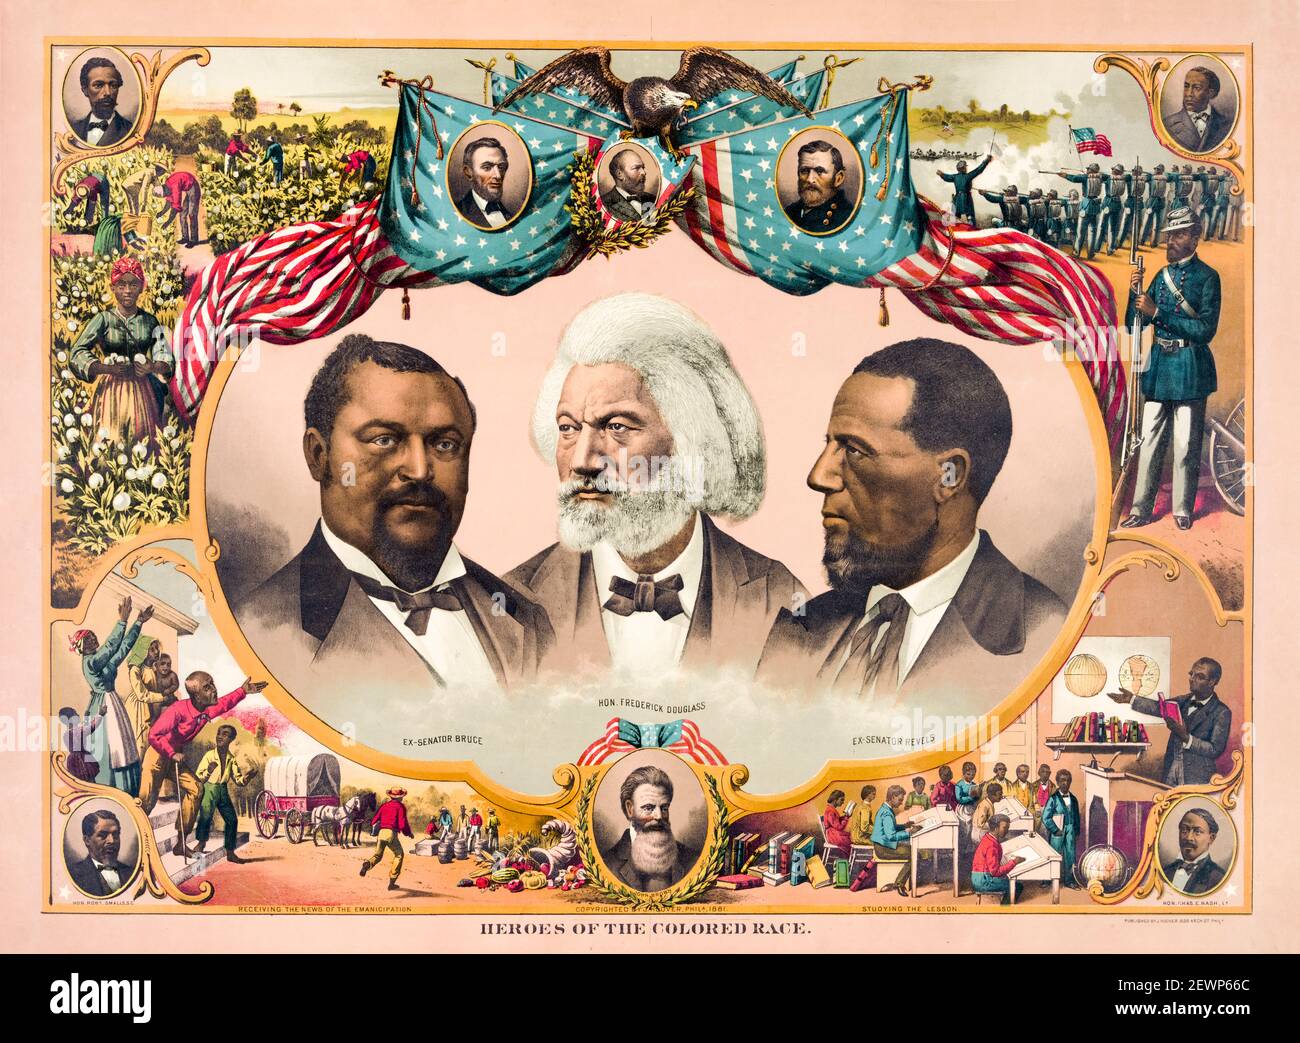 Héros de la course colorée : commémore l'avancement du mouvement afro-américain des droits civils du XIXe siècle, affiche de Joseph Hoover, 1881 Banque D'Images